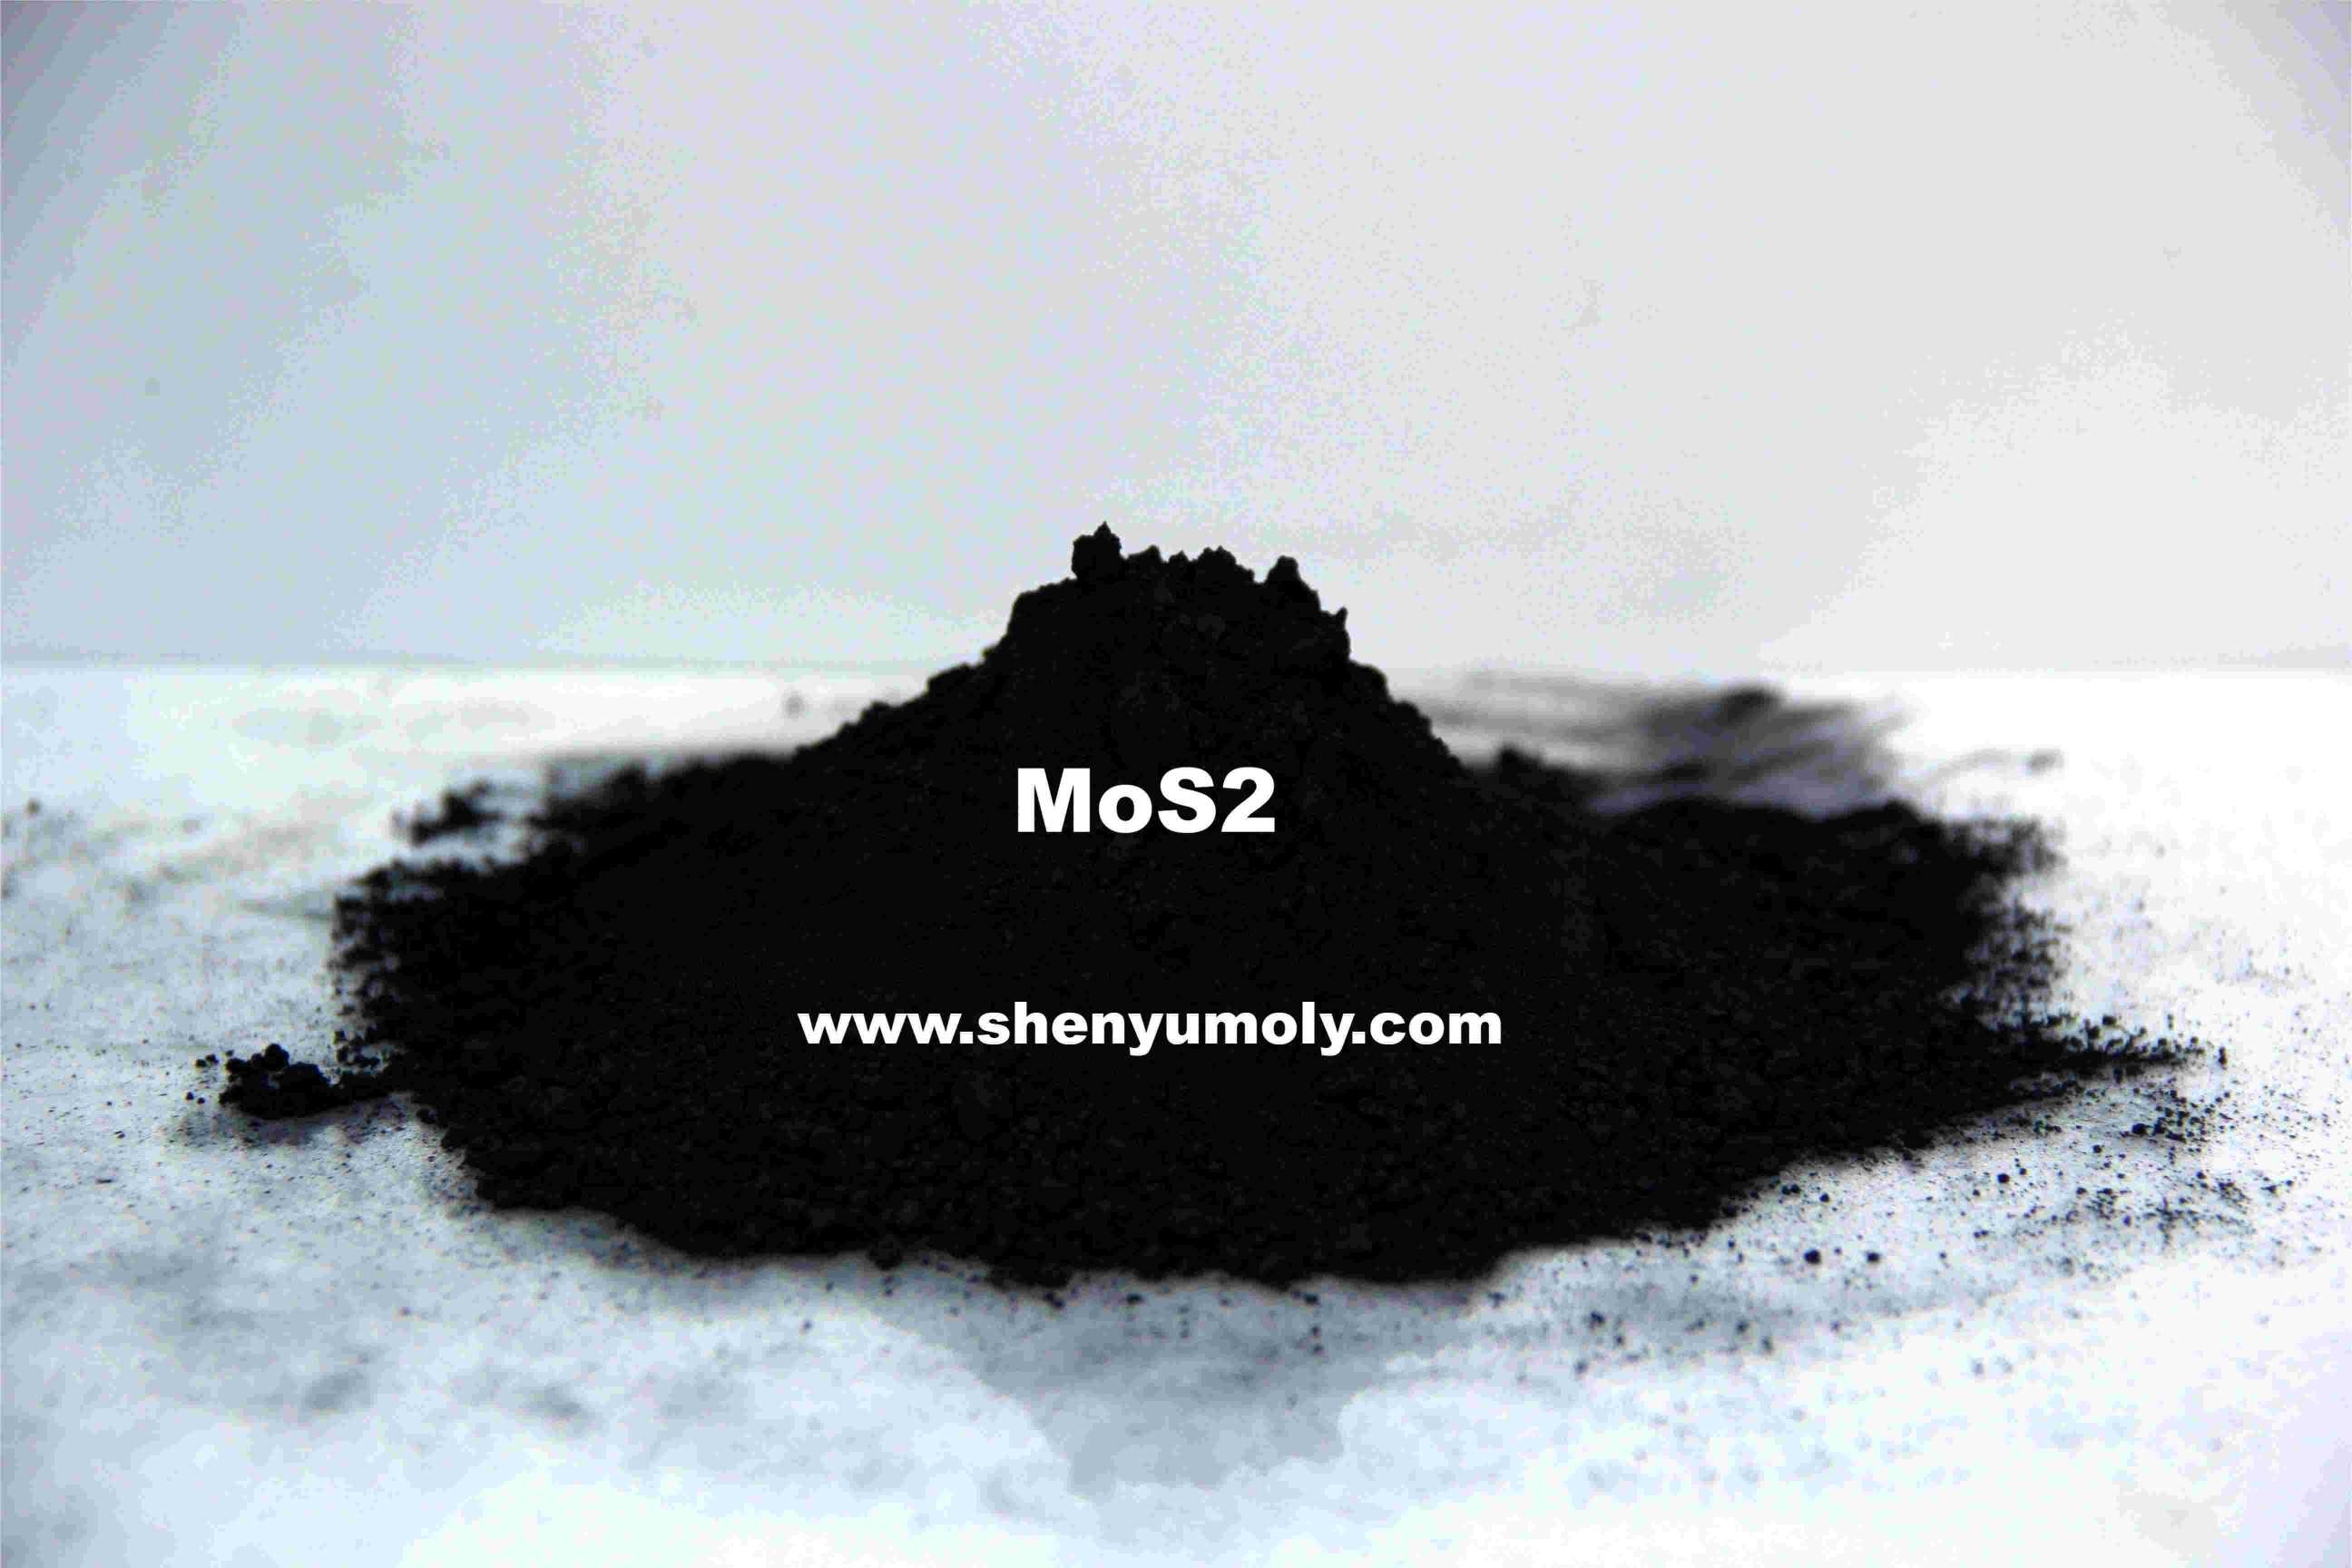 購入グリース用二硫化モリブデンMoS2,グリース用二硫化モリブデンMoS2価格,グリース用二硫化モリブデンMoS2ブランド,グリース用二硫化モリブデンMoS2メーカー,グリース用二硫化モリブデンMoS2市場,グリース用二硫化モリブデンMoS2会社